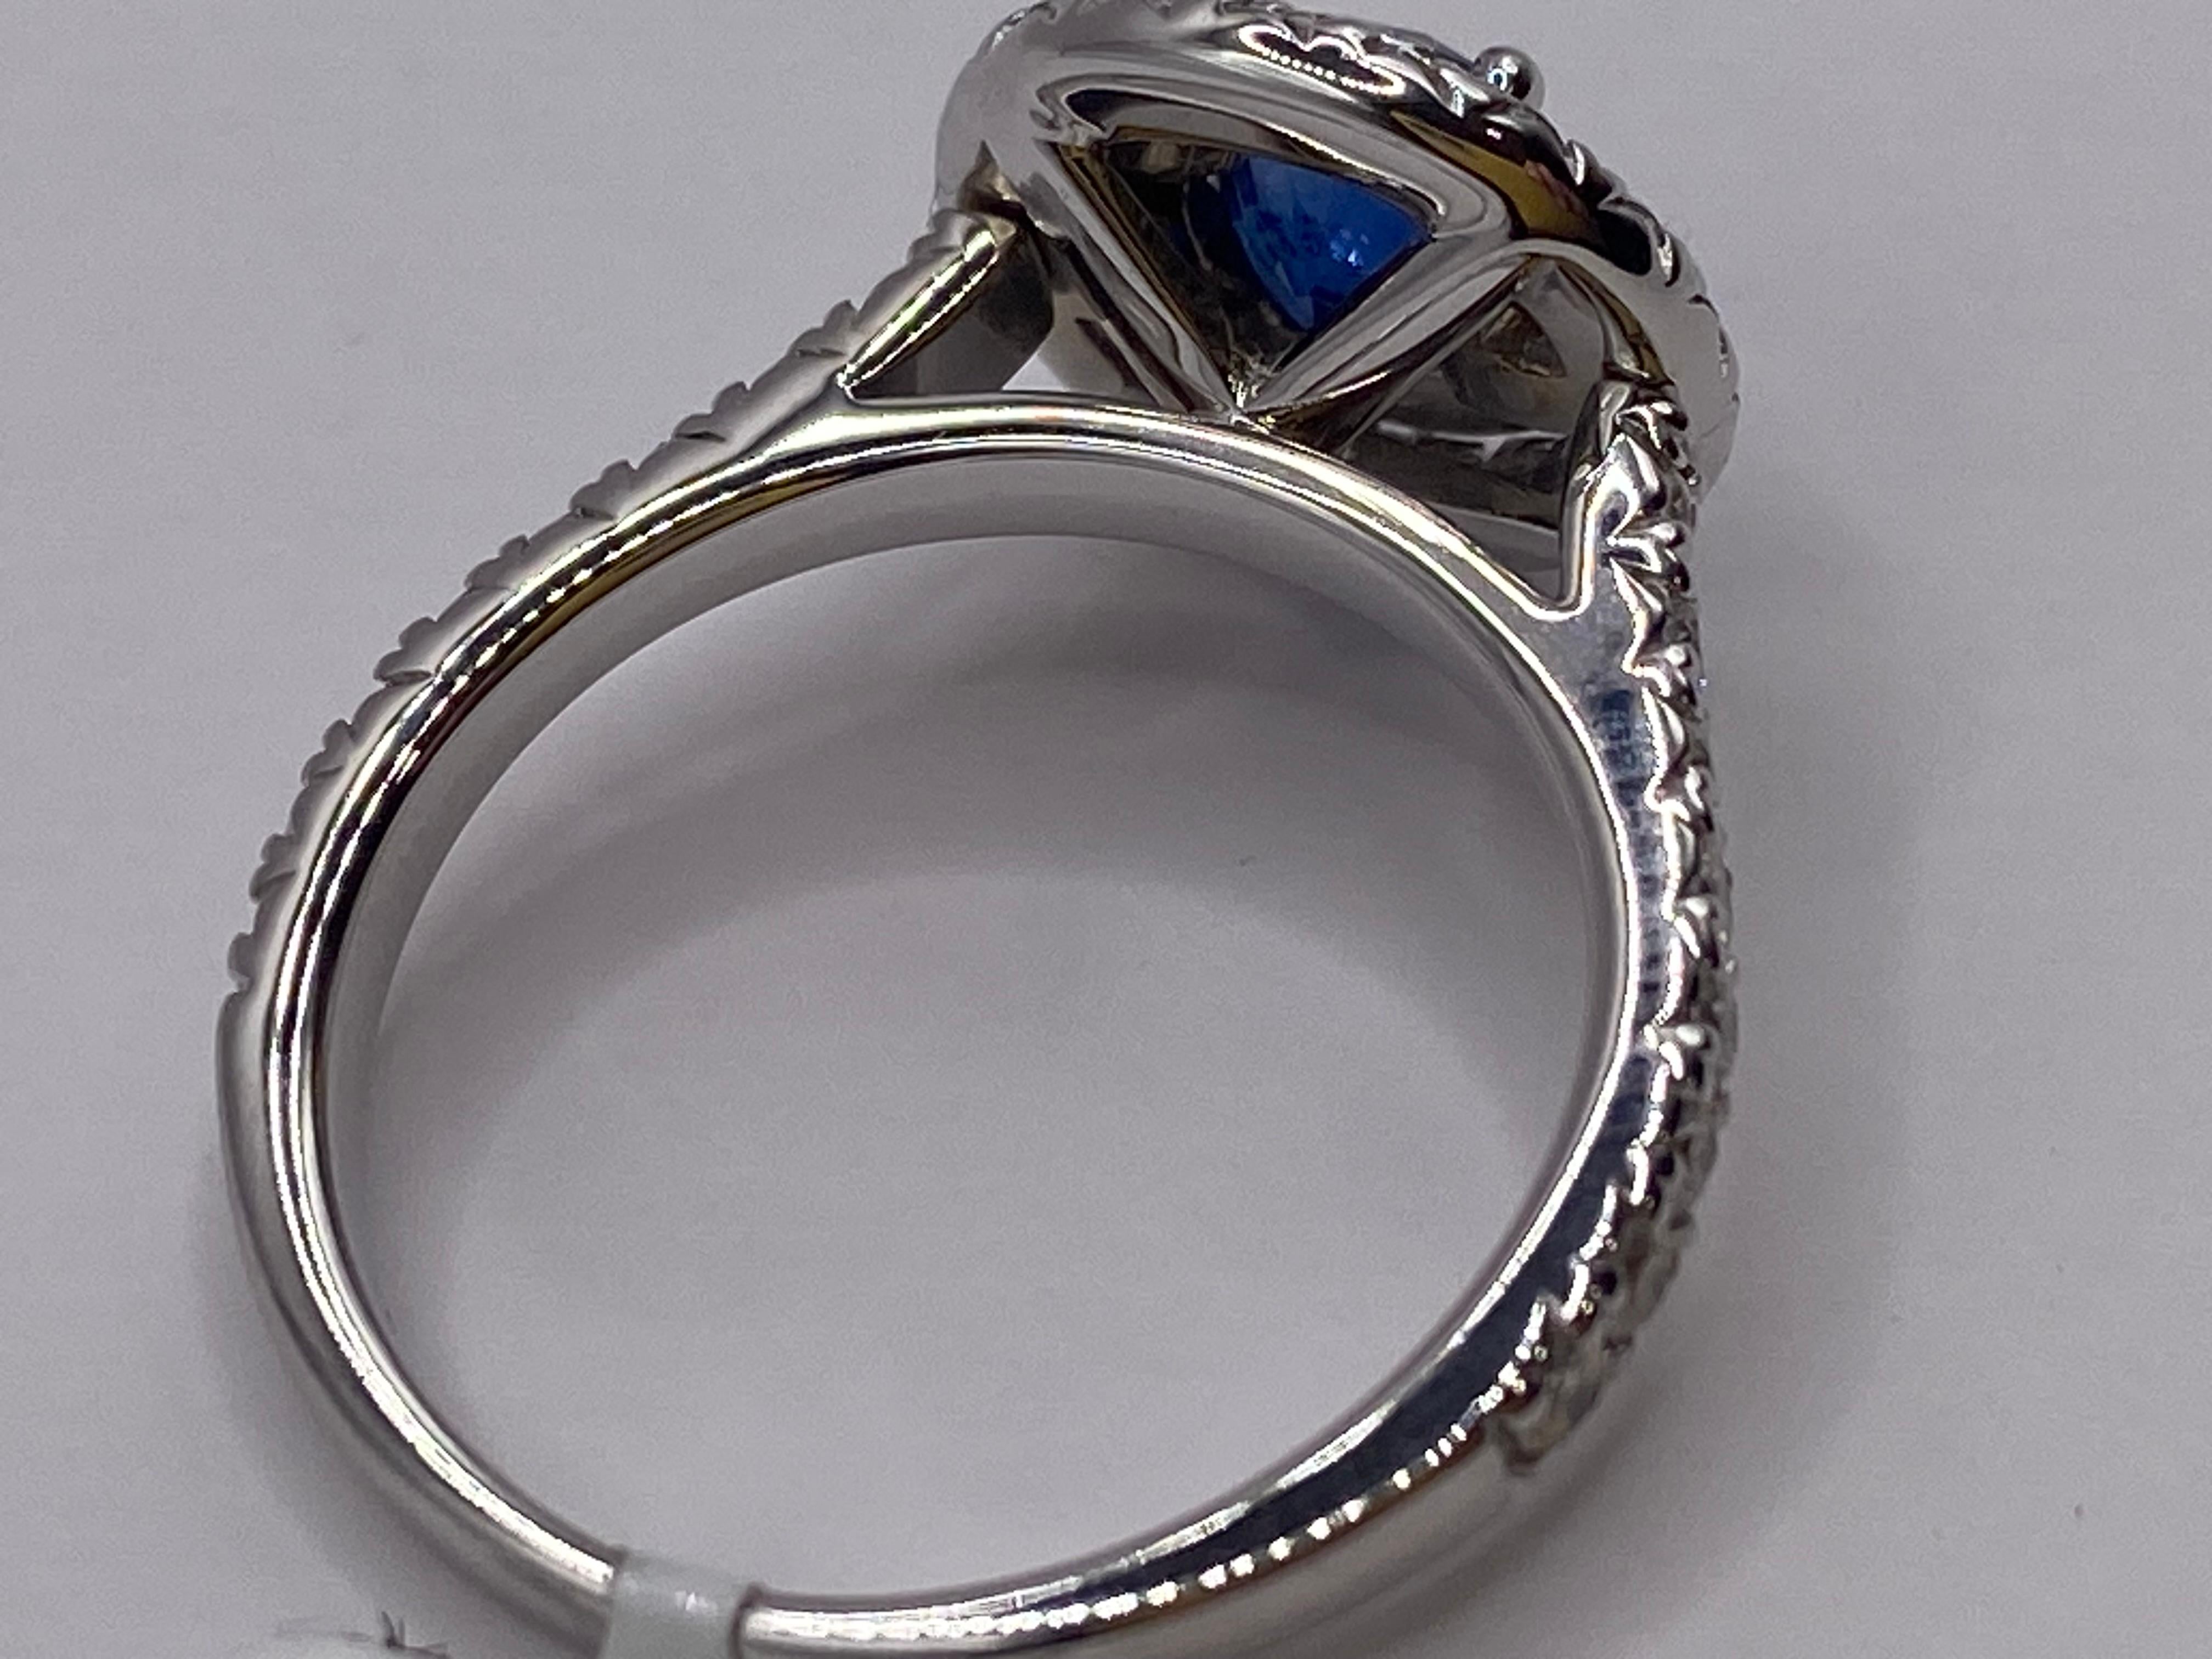 18KT Weißgold
Ring Größe: 6.5
(Ring ist Größe 6,5, aber auf Anfrage auch größer)

Anzahl von Saphiren: 1
Karatgewicht: .92ctw
Steingröße: 5,25 mm

Anzahl der Diamanten: 47
Karatgewicht: 1.00ctw